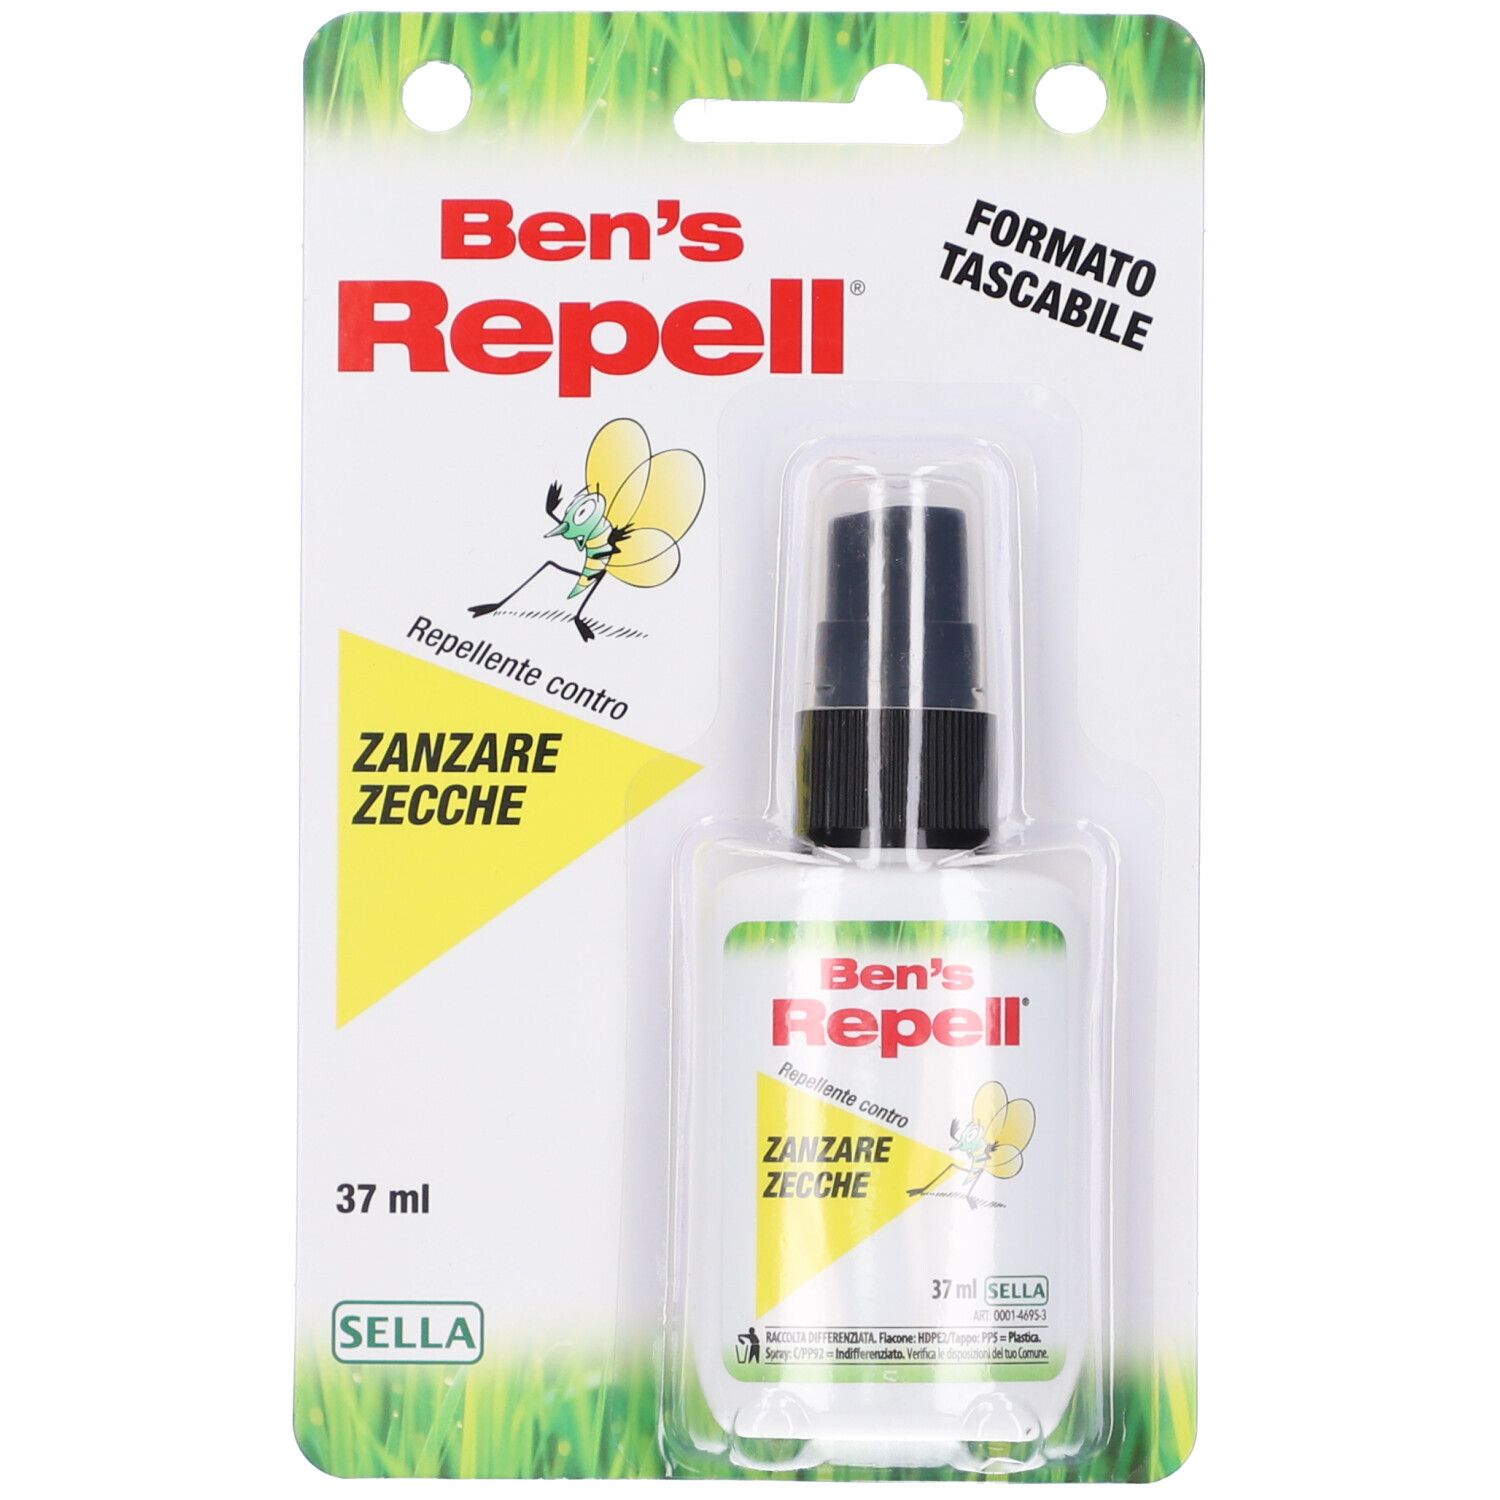 Ben's Repellente Biocida Zanzare Zecche